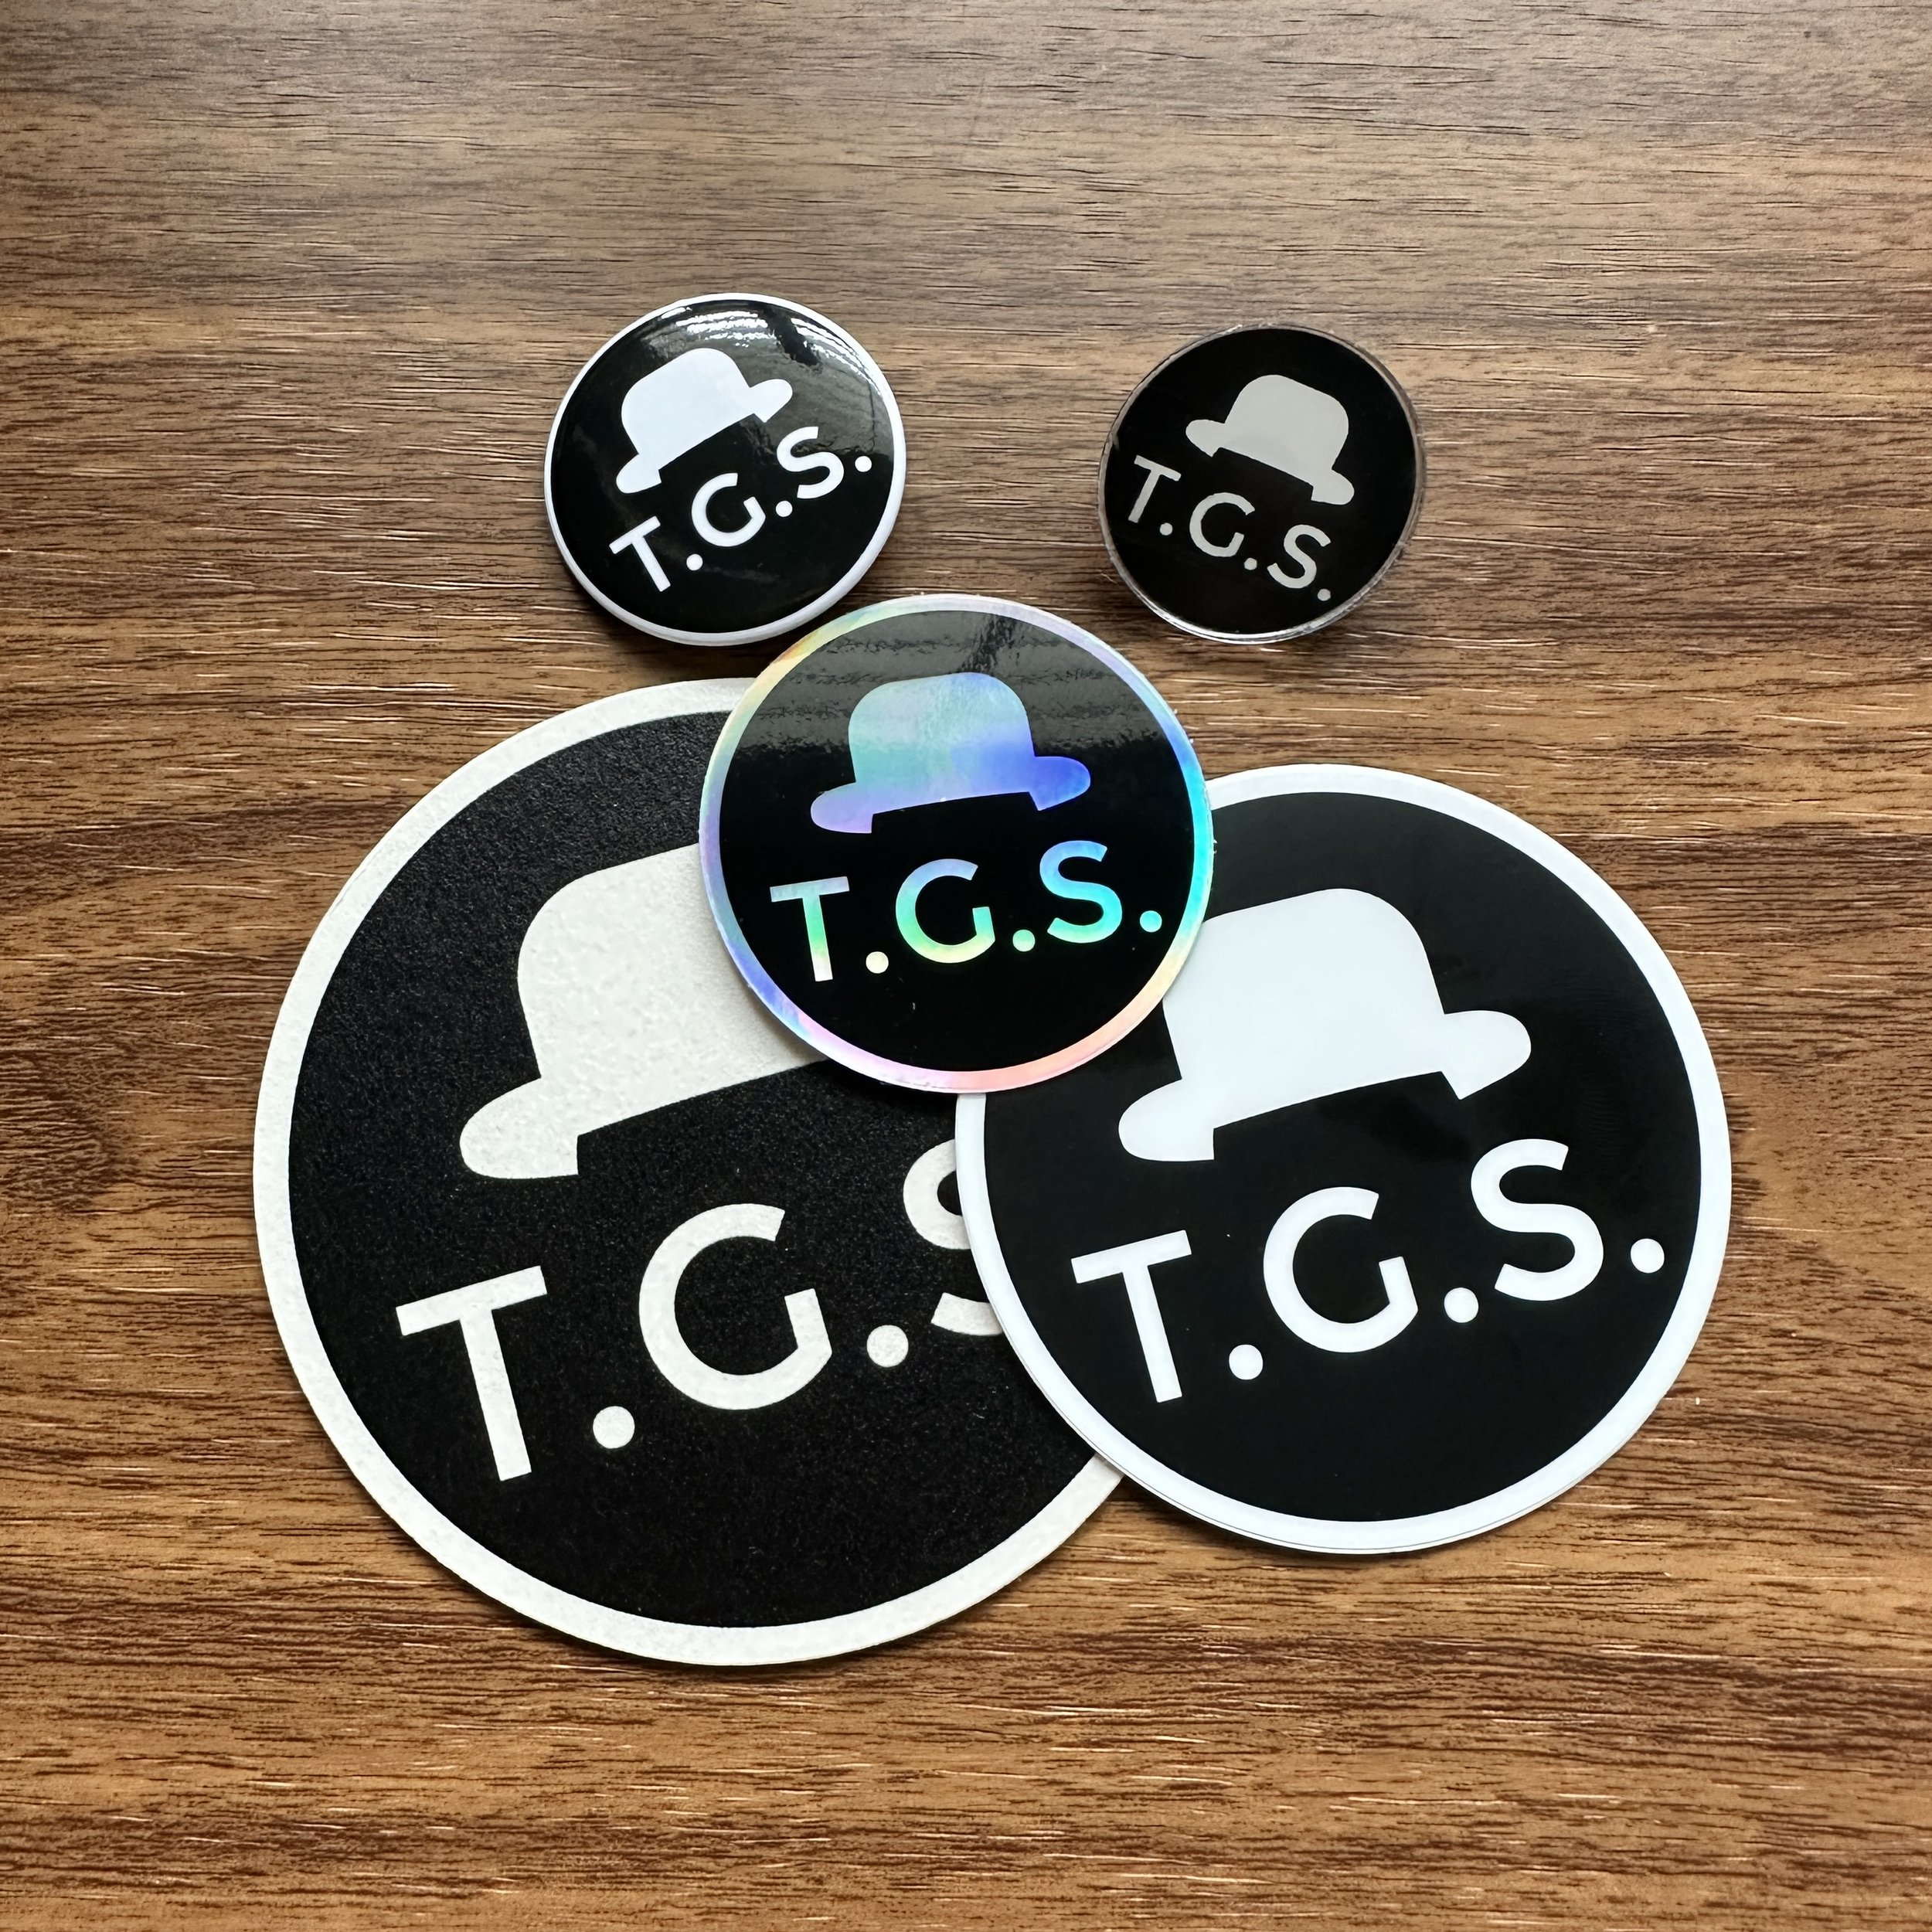 TGS Branded! 